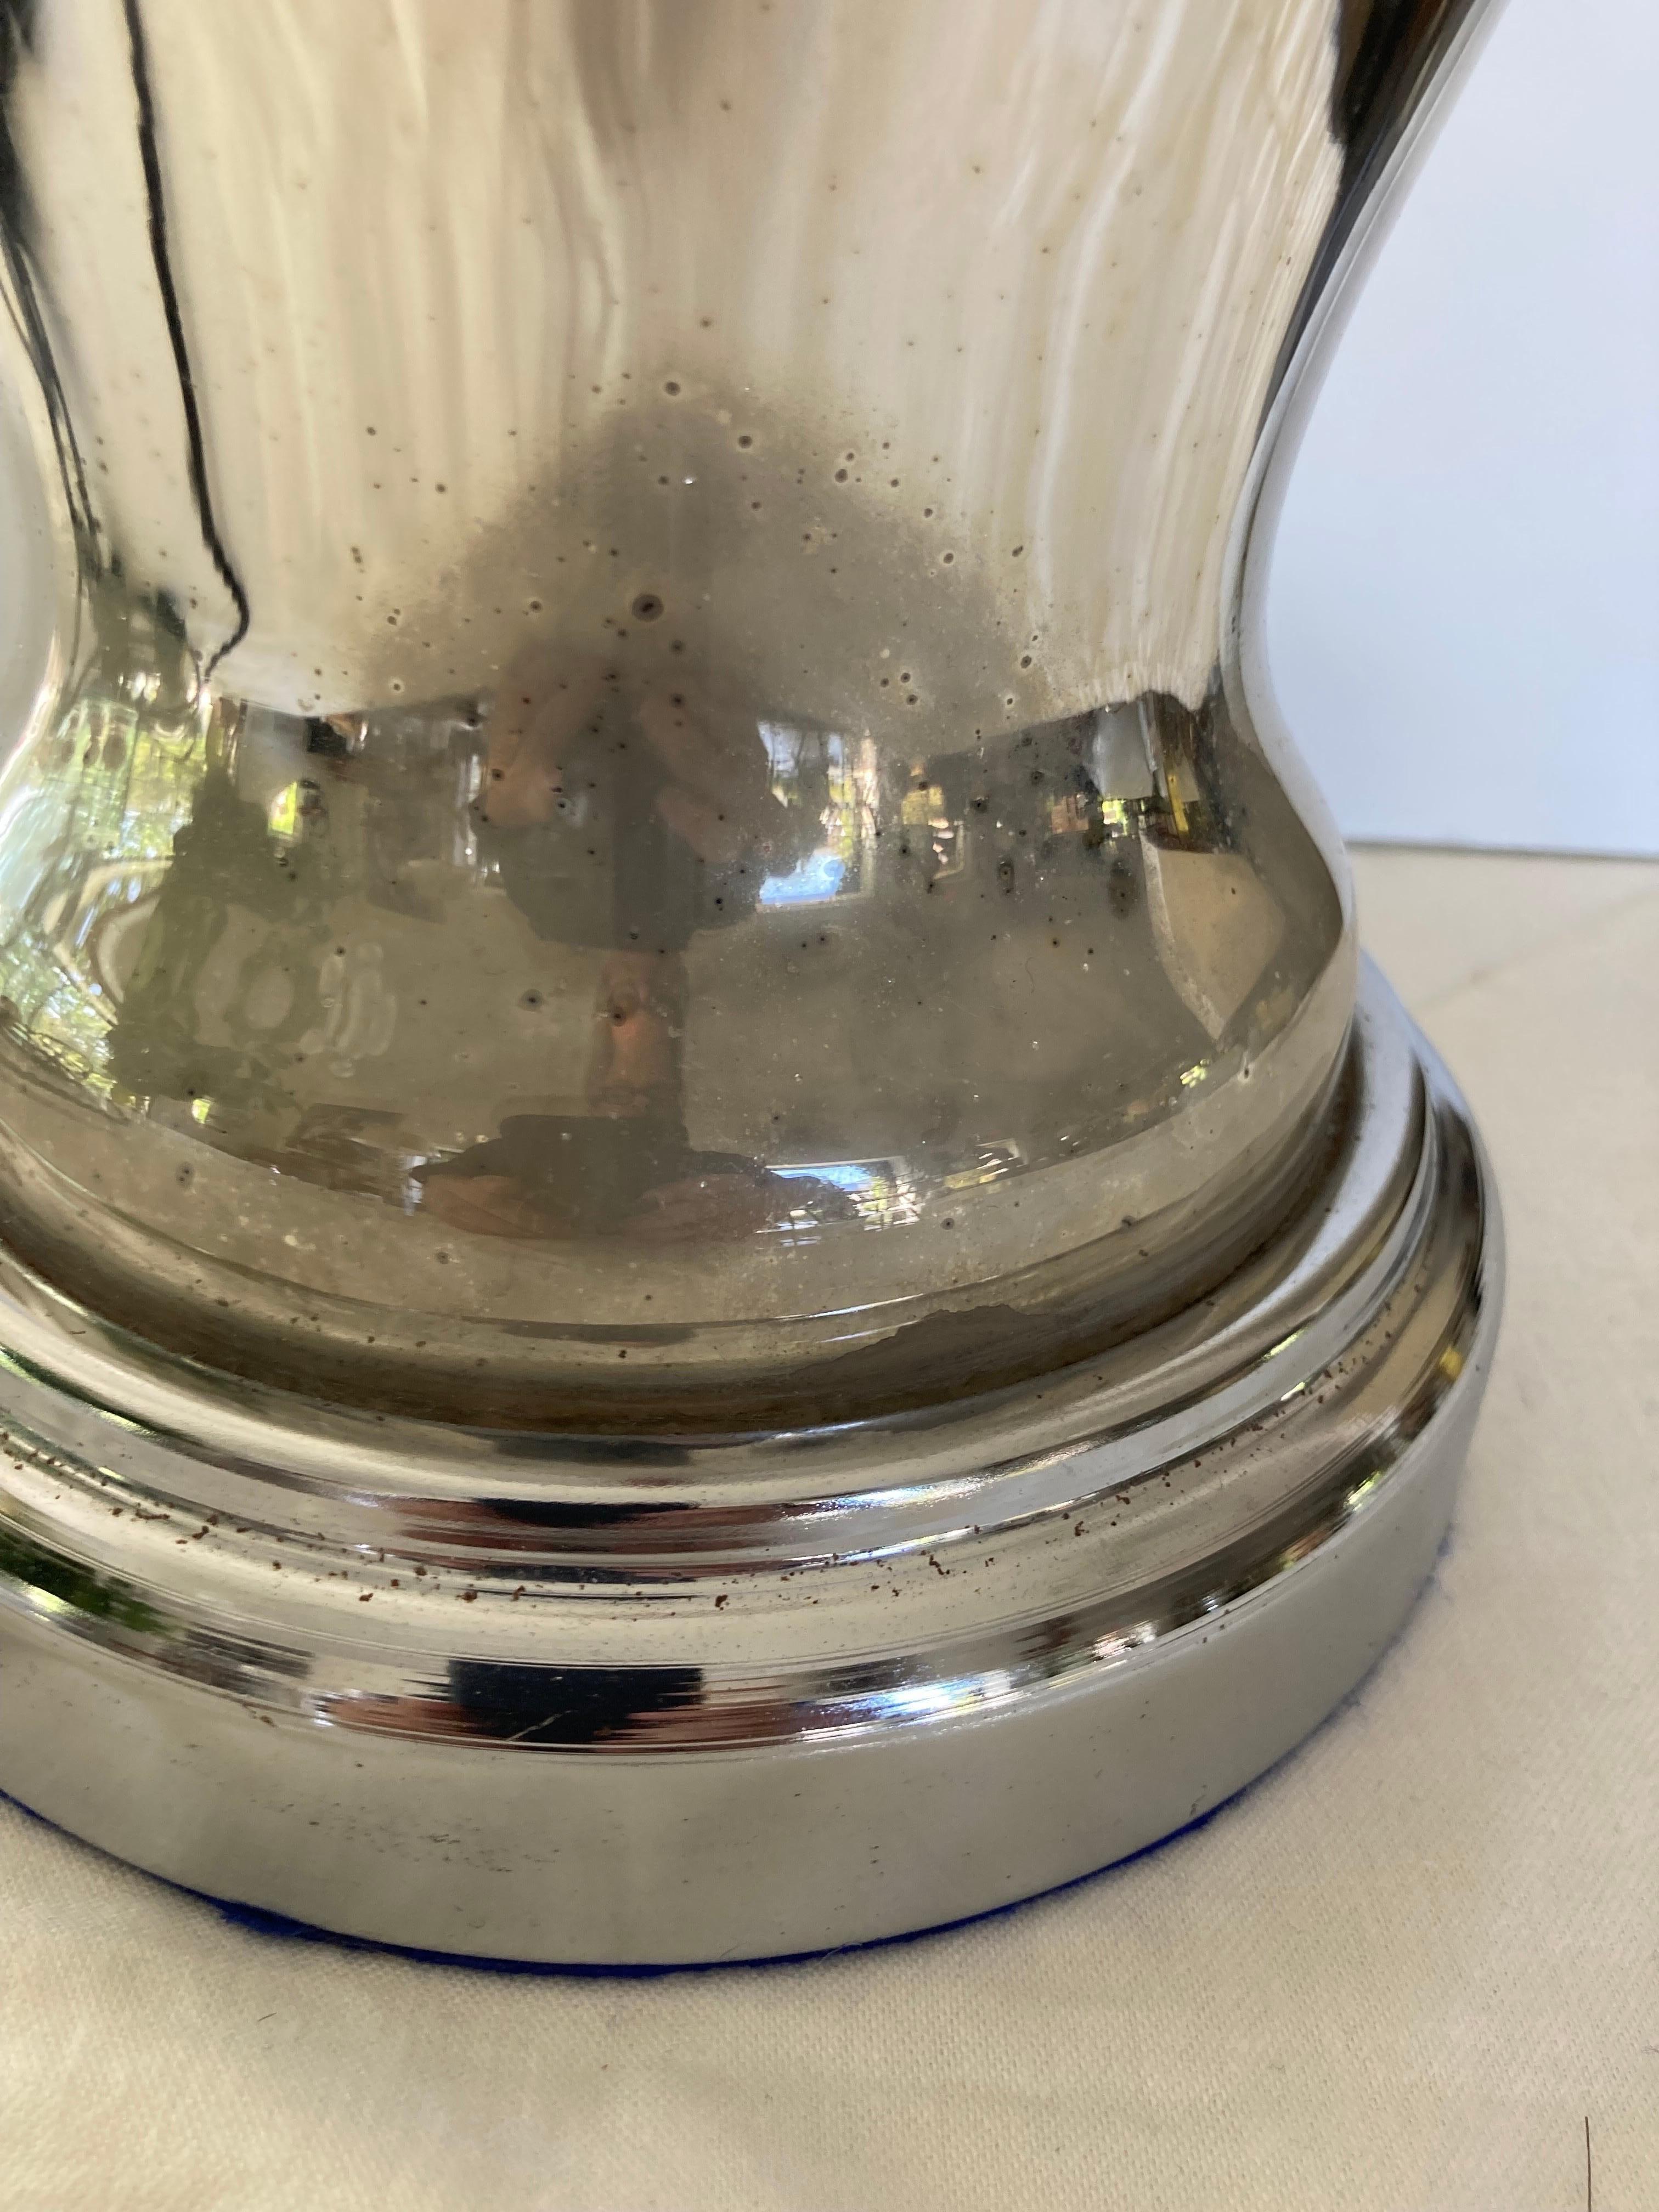 Lampe de table en verre au mercure avec base en métal chromé et nouveau câblage en soie torsadée ; une petite fissure comme indiqué sur la face arrière.